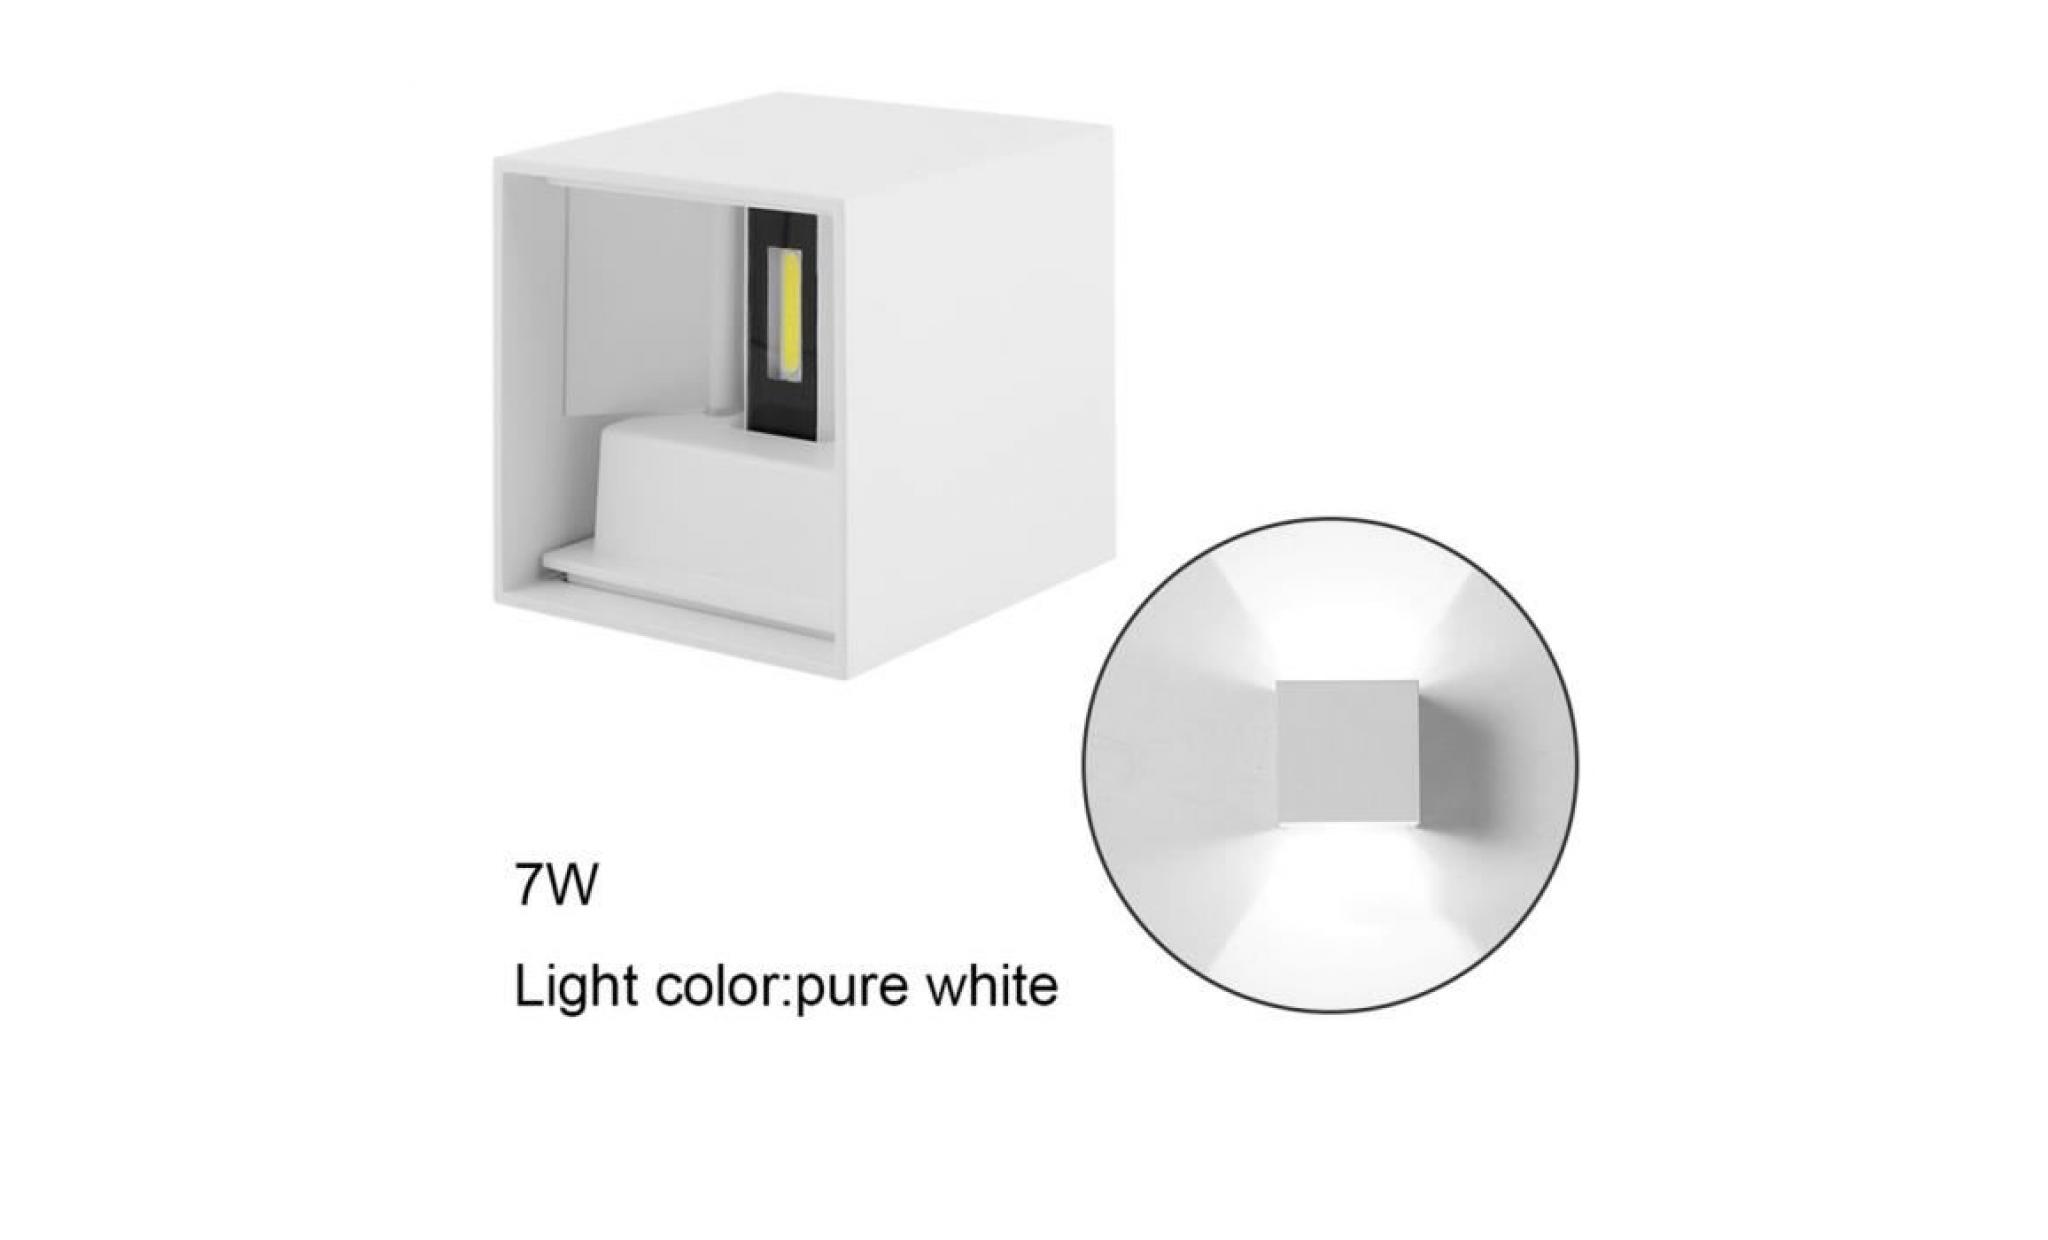 applique murale 7w led lampe carrée interieur réglable éclairage pour chambre   couleur blanc   lumière blanc chaud pas cher